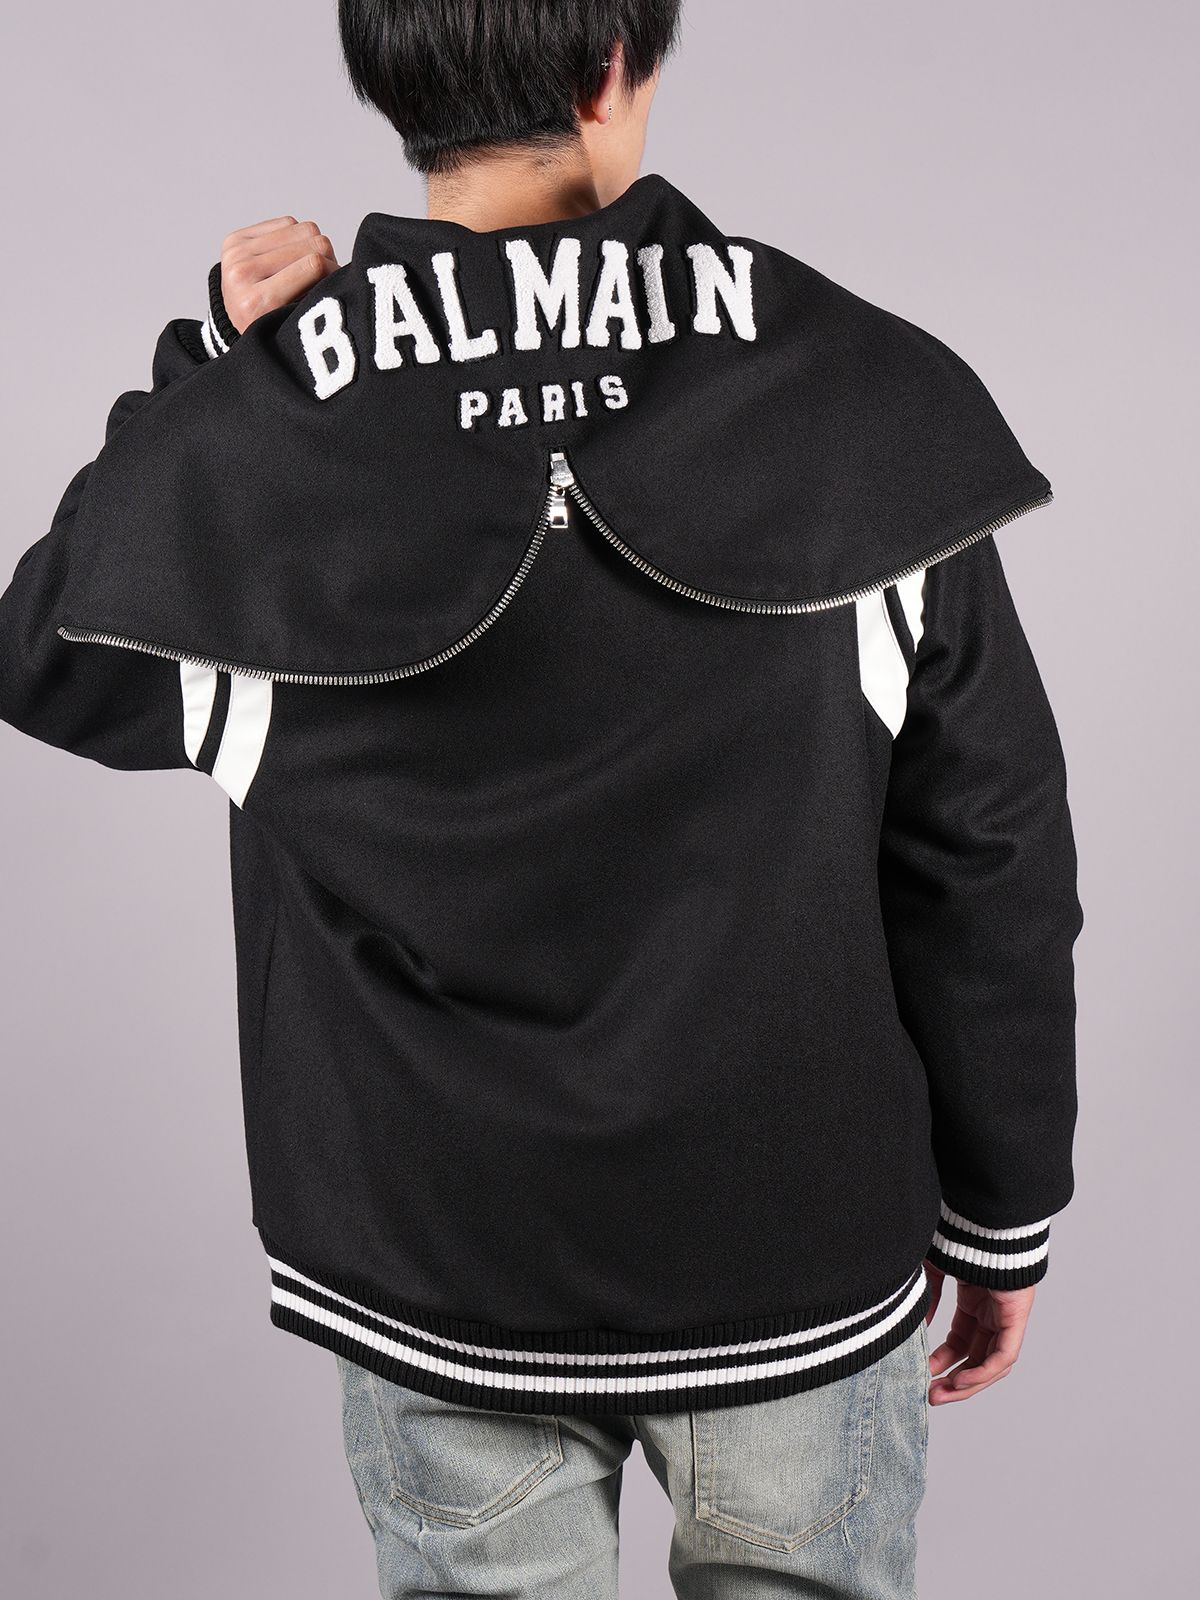 BALMAIN PARIS フードベスト ブラック（XS）